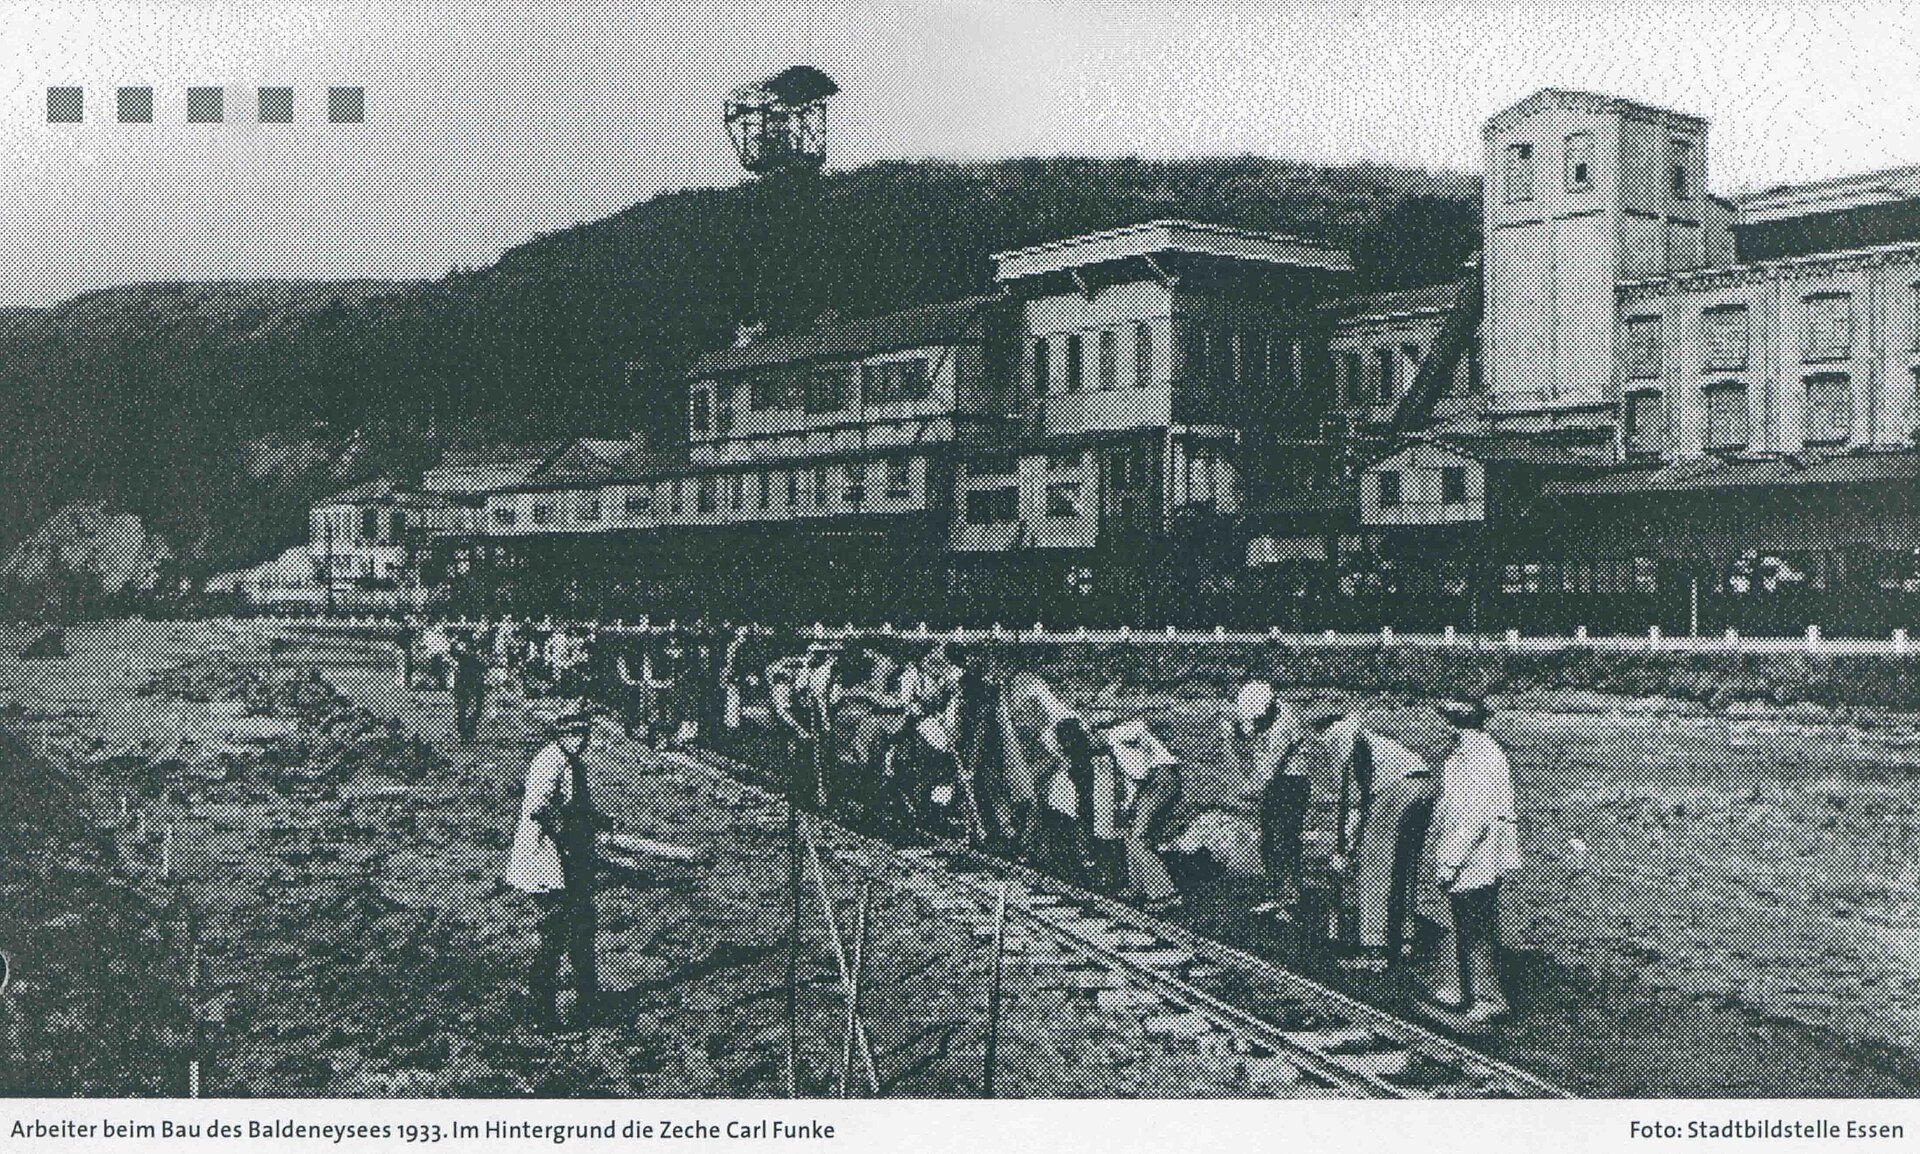 Arbeiter beim Bau des Staudamms, der ab 1933 die Ruhr zum Baldeneysee staute.